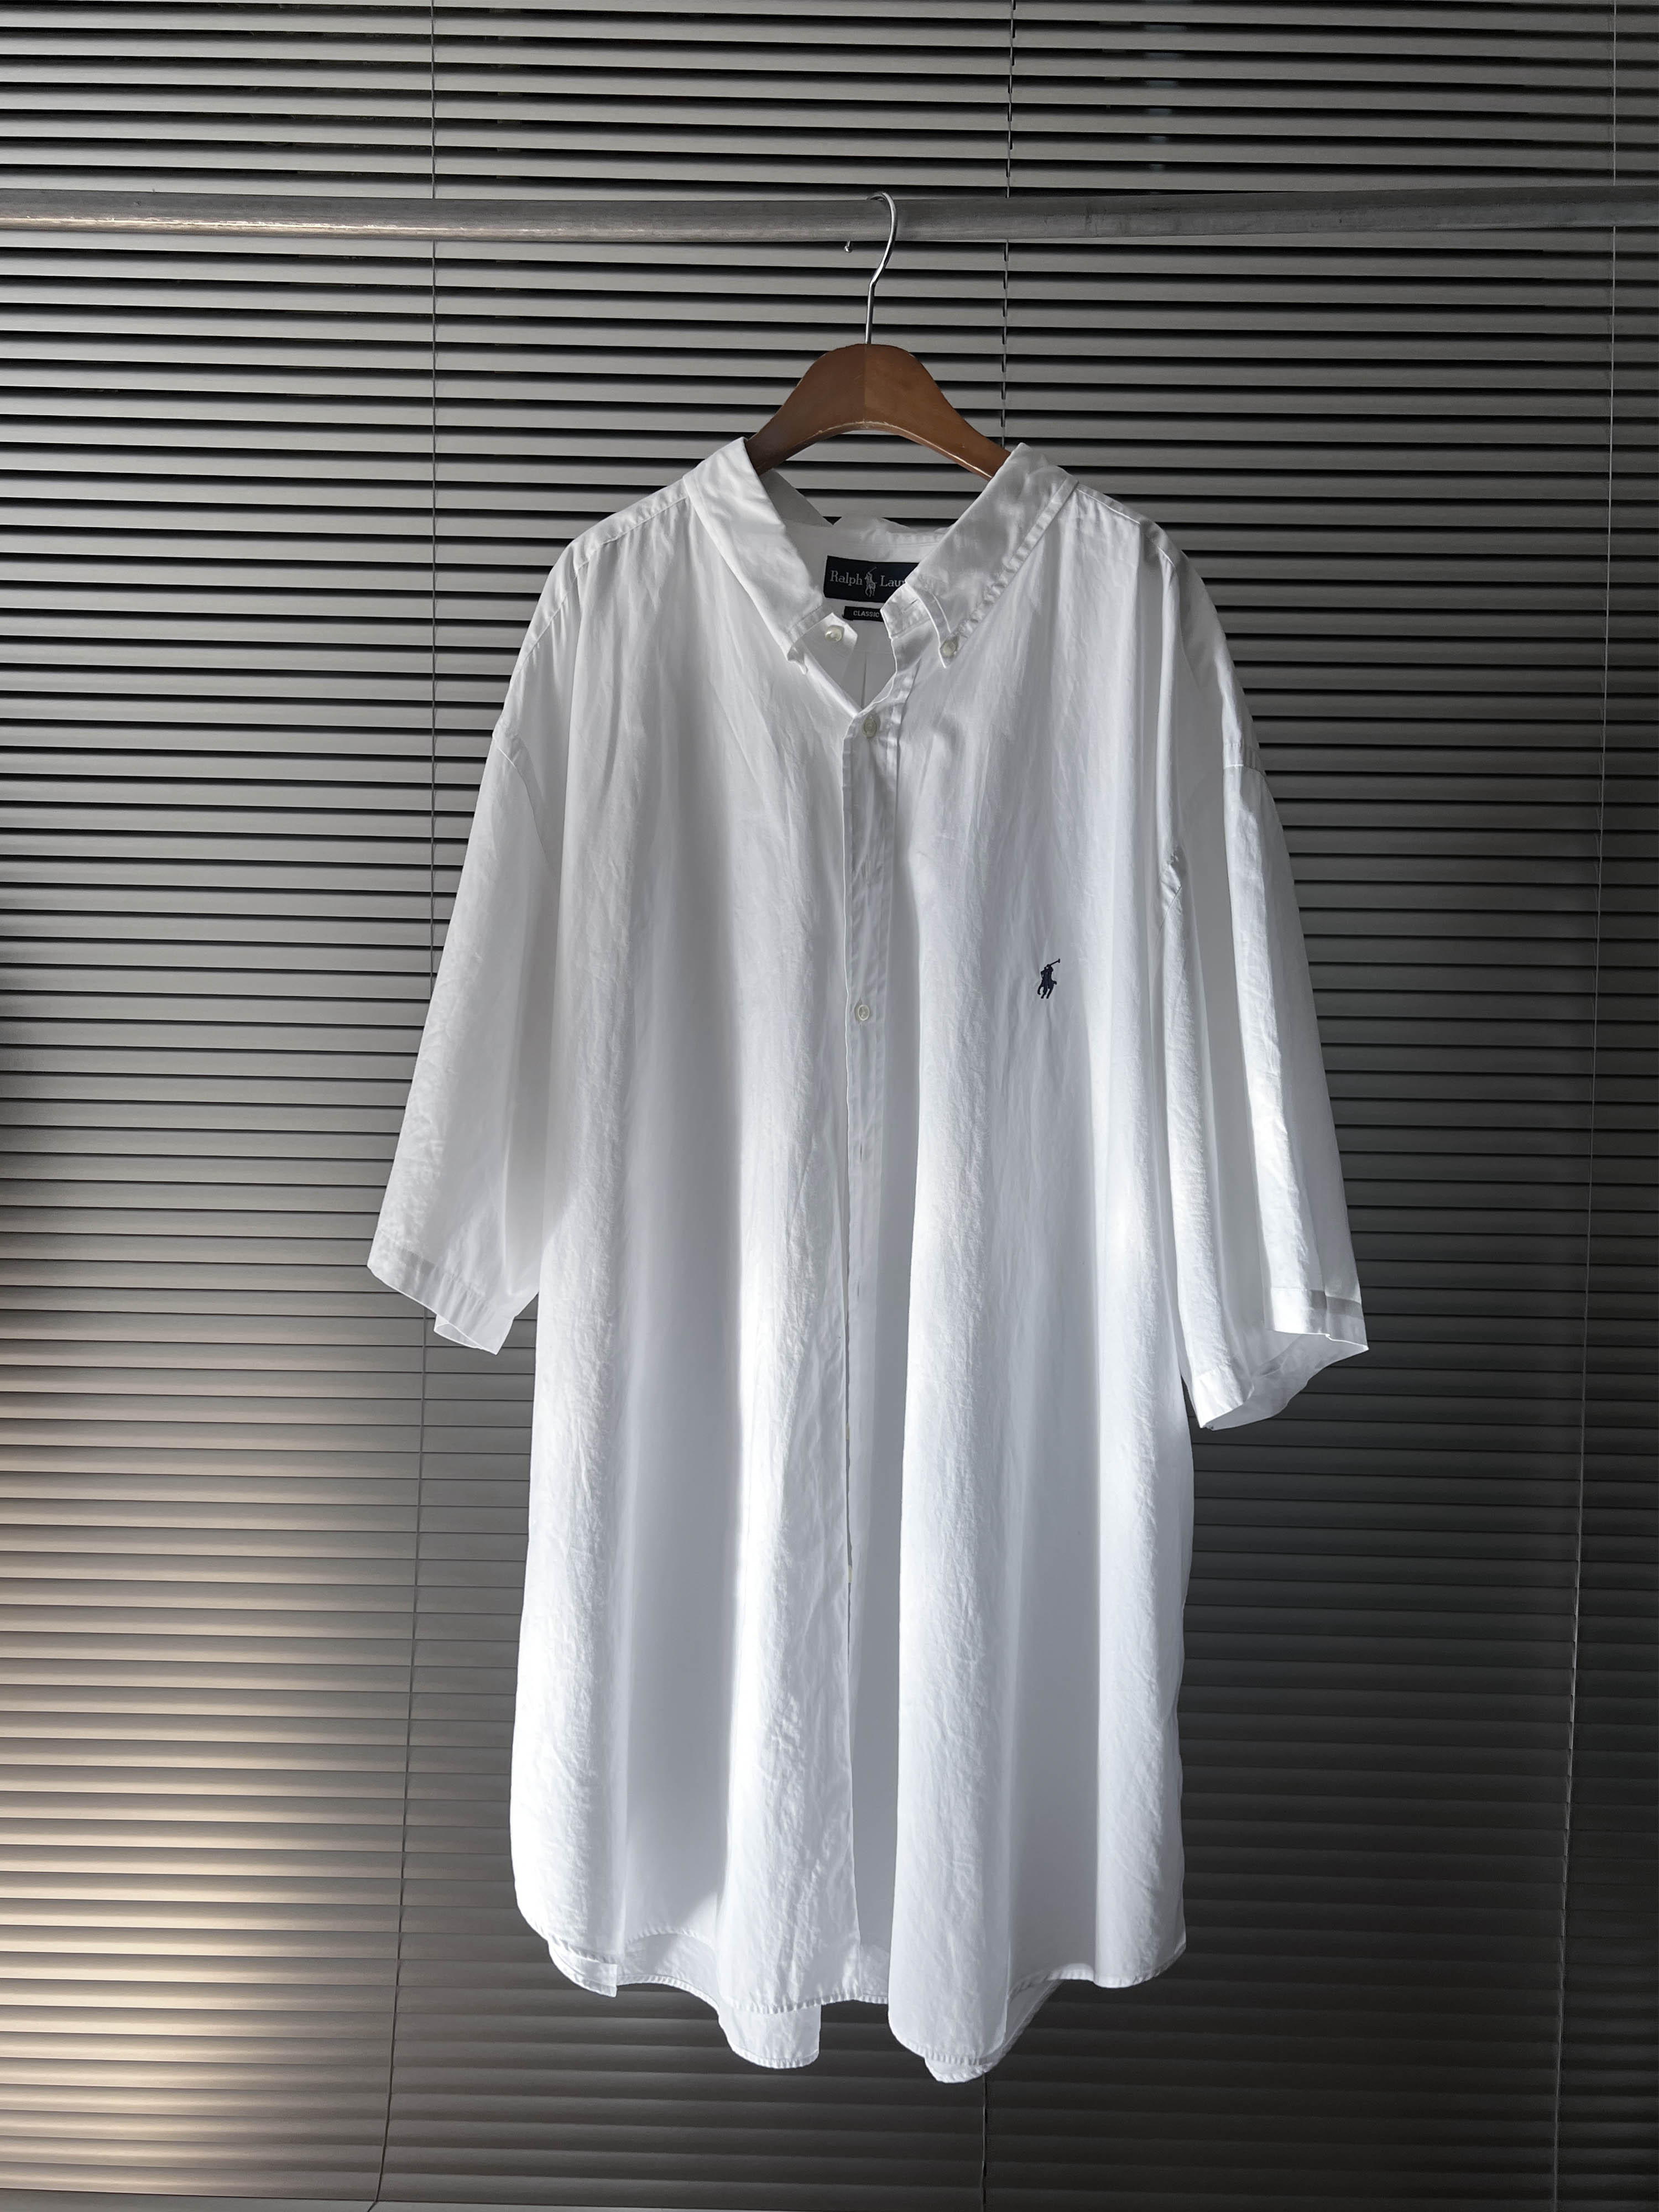 Polo ralph Lauren overfit shirts (4XL)